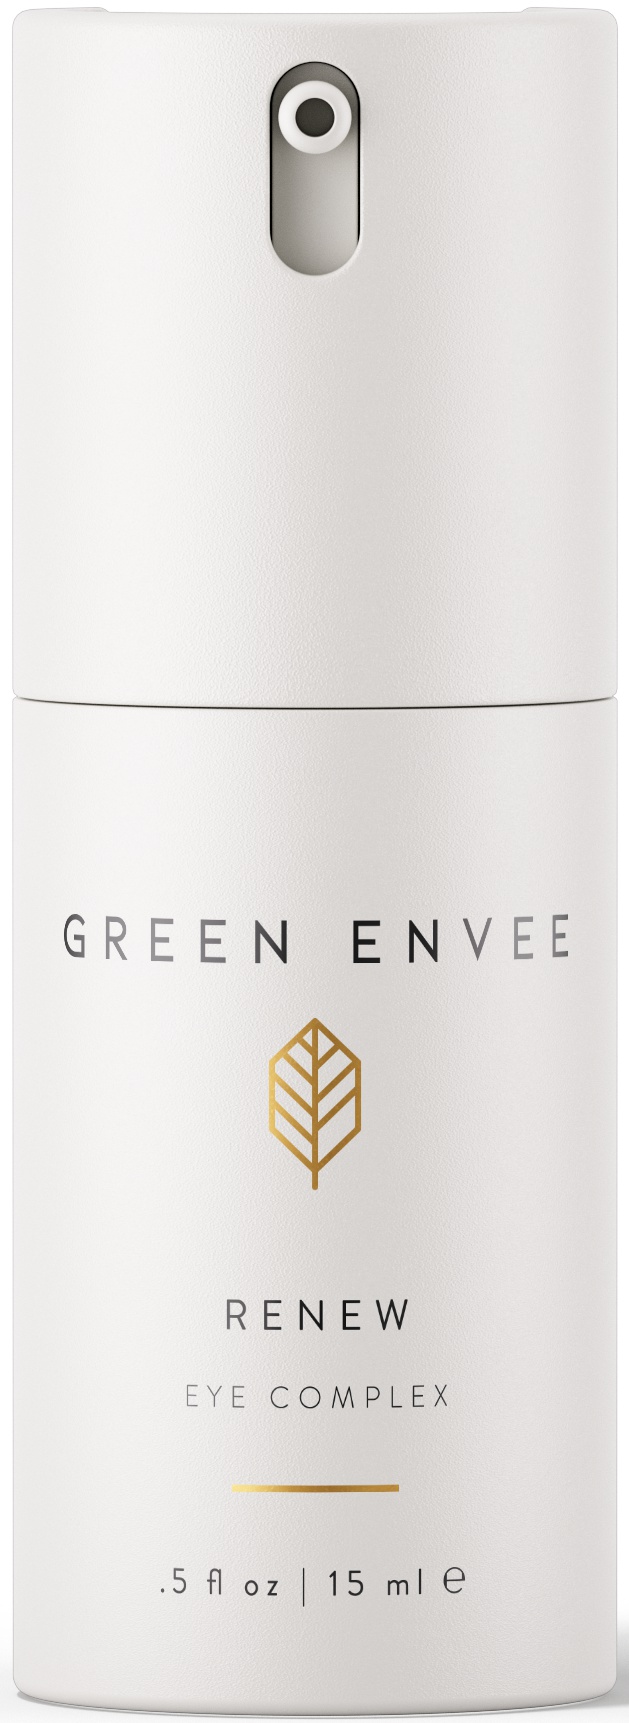 green envee Renew Eye Complex